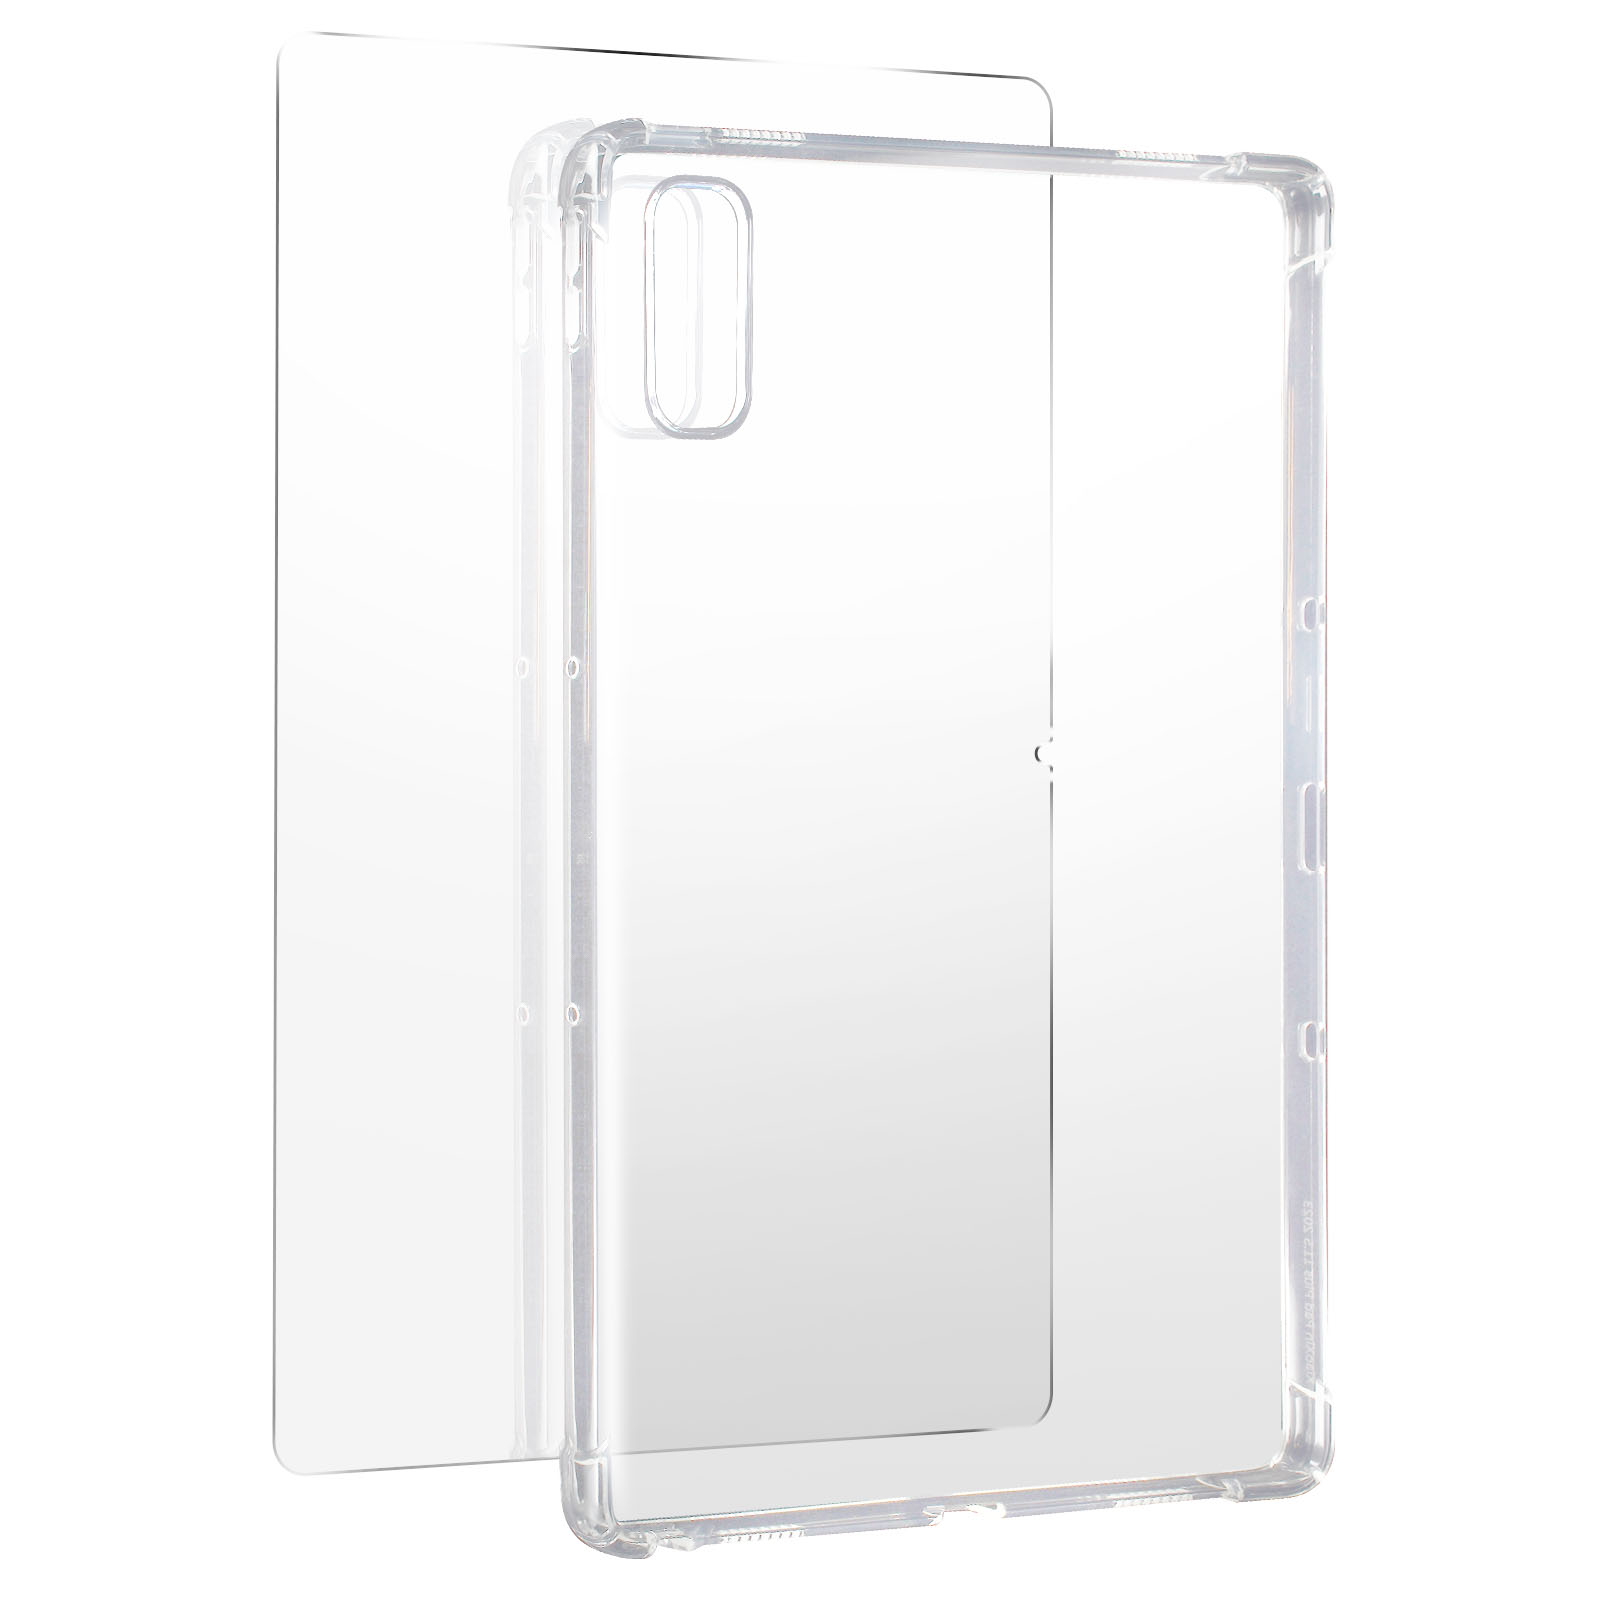 AVIZAR Premium Schutz-Set: Hülle Backcover Schutz-Sets + Gehärtetes Folie Series für Glas, Silikongel und Lenovo Transparent